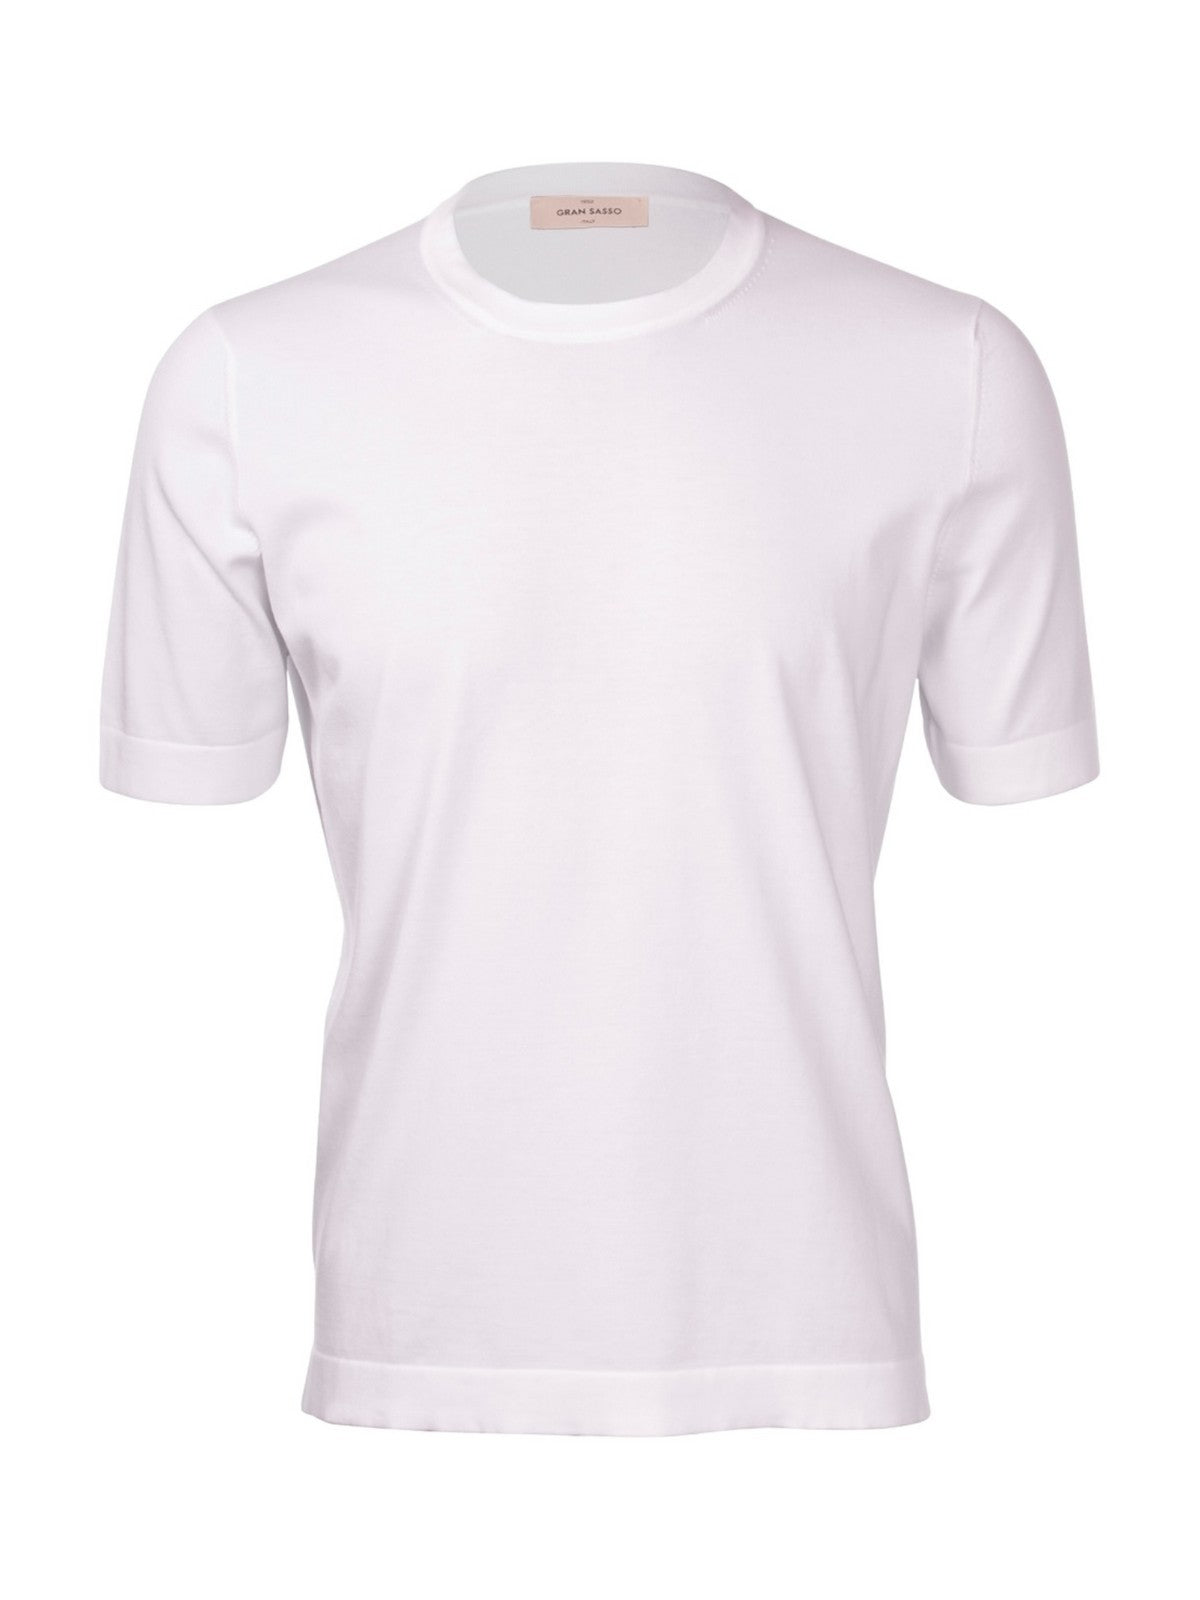 GRAN SASSO T-Shirt e Polo Uomo  43168/21820 001 Bianco